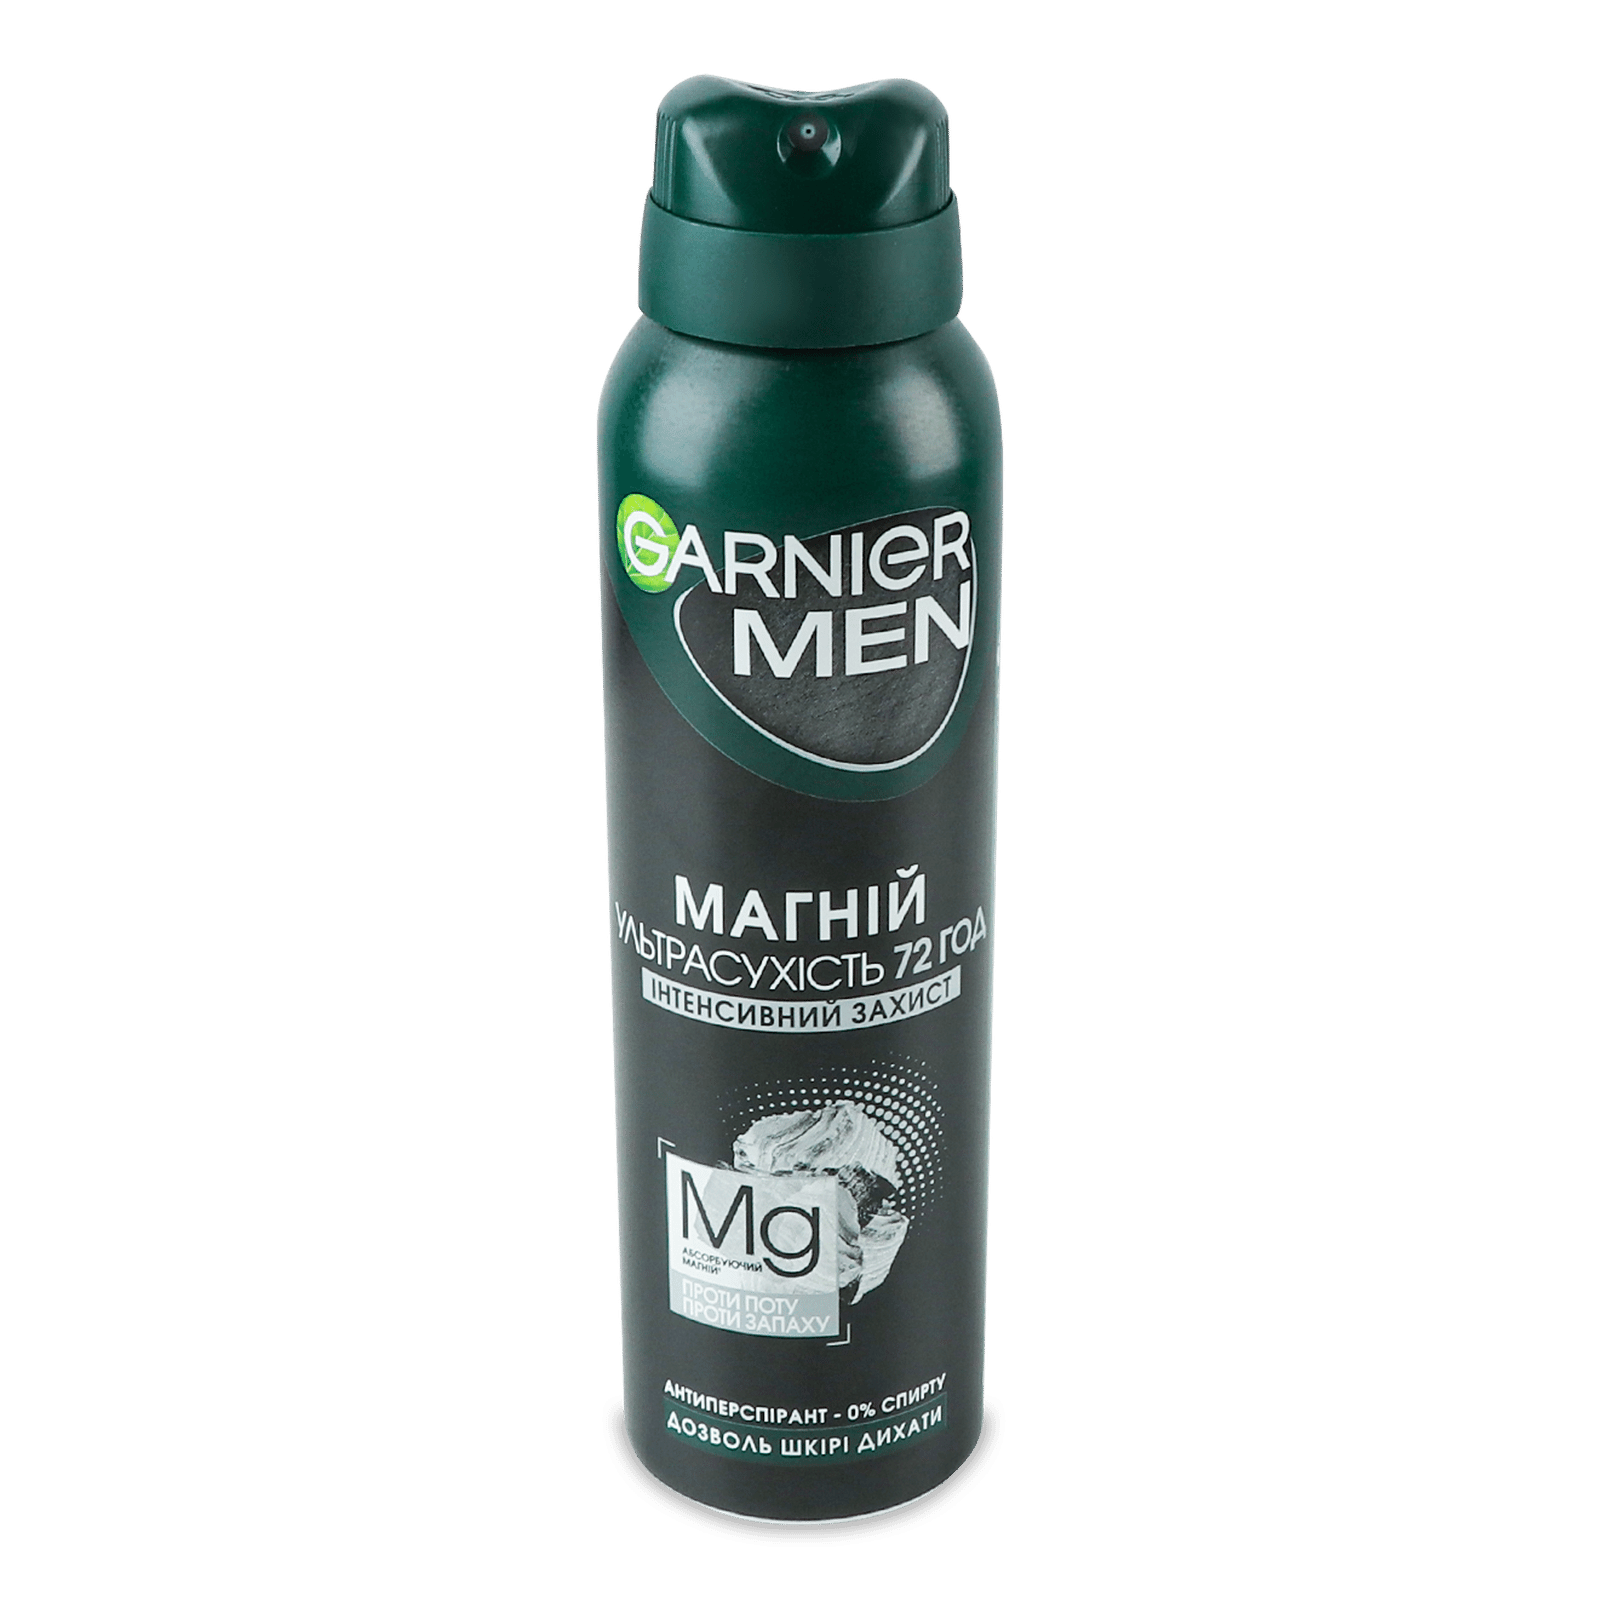 Дезодорант-спрей Garnier Men магній ультрасухість - 1